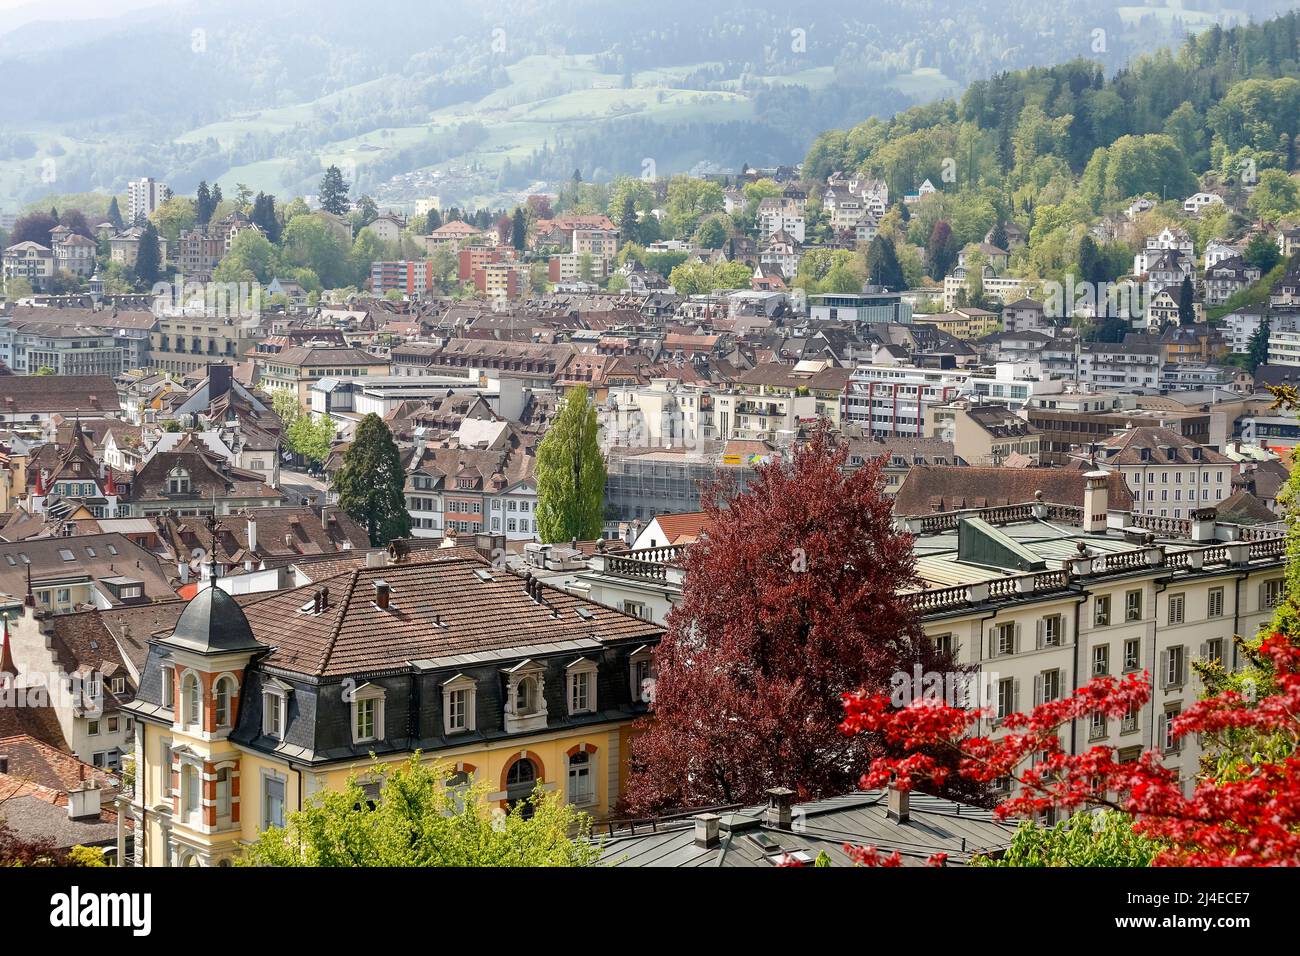 Luzern, Schweiz - 04. Mai 2016: Luftaufnahme der verschiedenen Gebäude zeigt die Dichte der Gebäude und die architektonische Vielfalt der Stadt Stockfoto